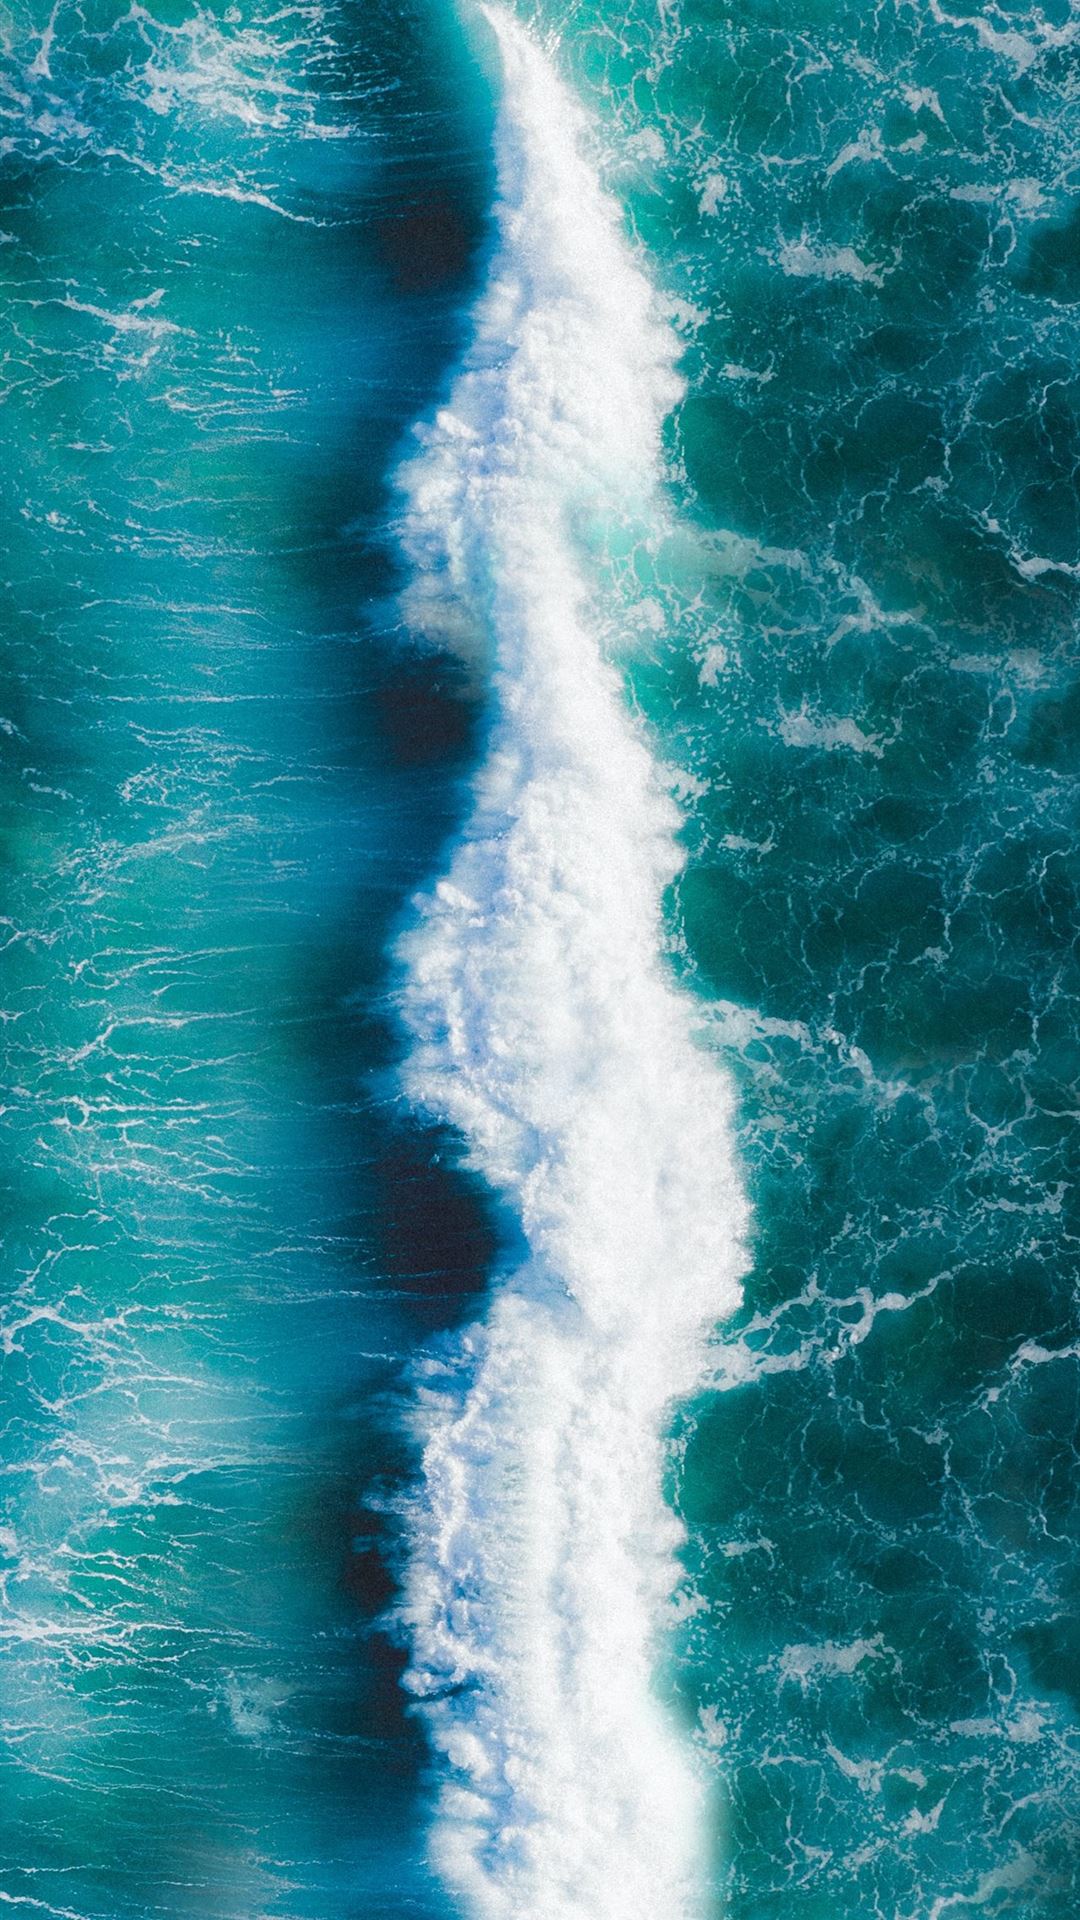 Spins waves waves. Морская волна. Заставка на айфон море. Обои для телефона вертикальные море. Море, волны.